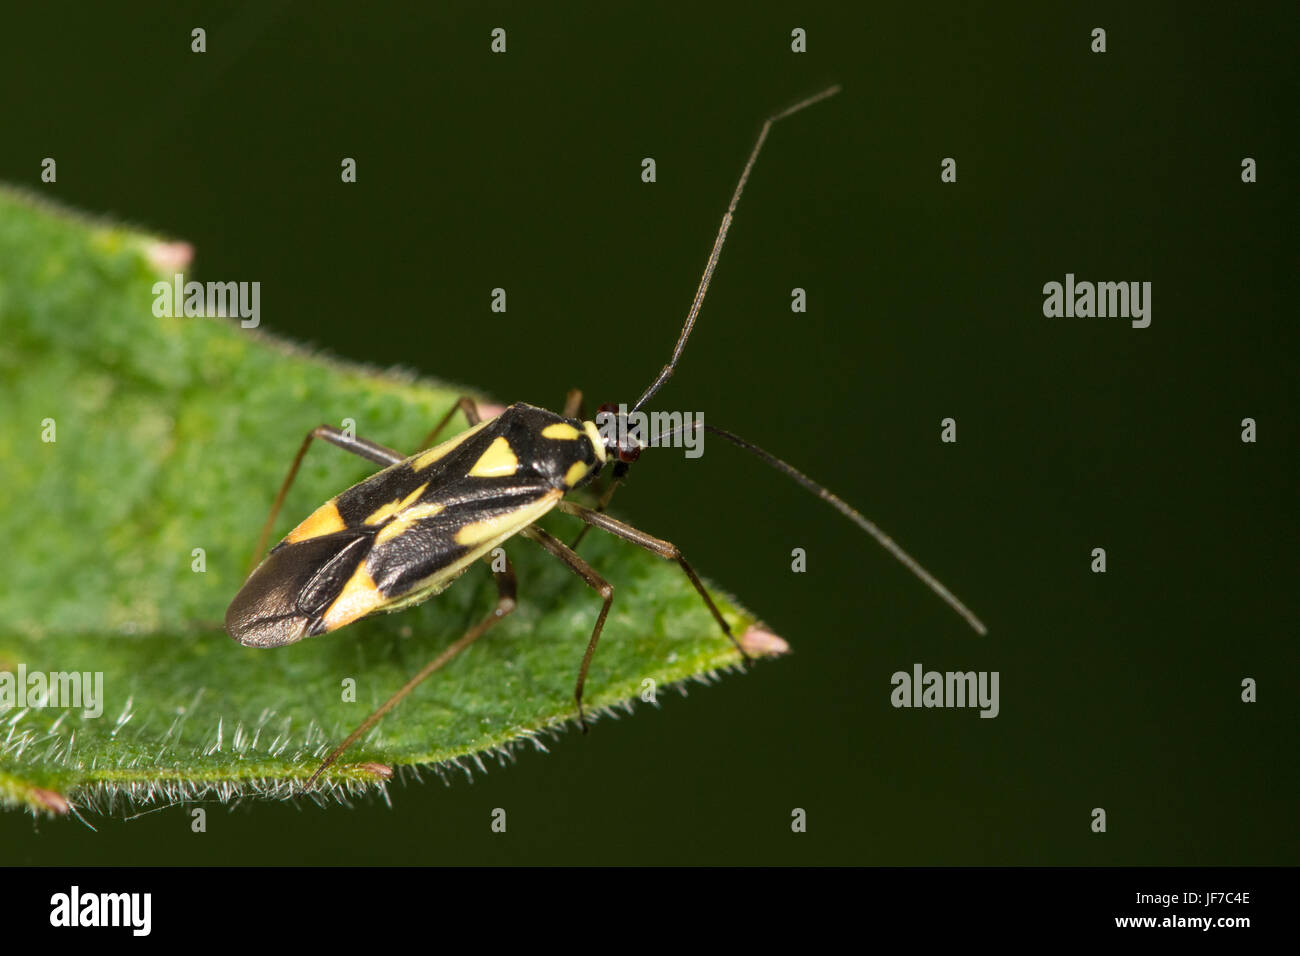 Grypocoris stysi (Mirid Bug) on a Stinging Nettle leaf Stock Photo